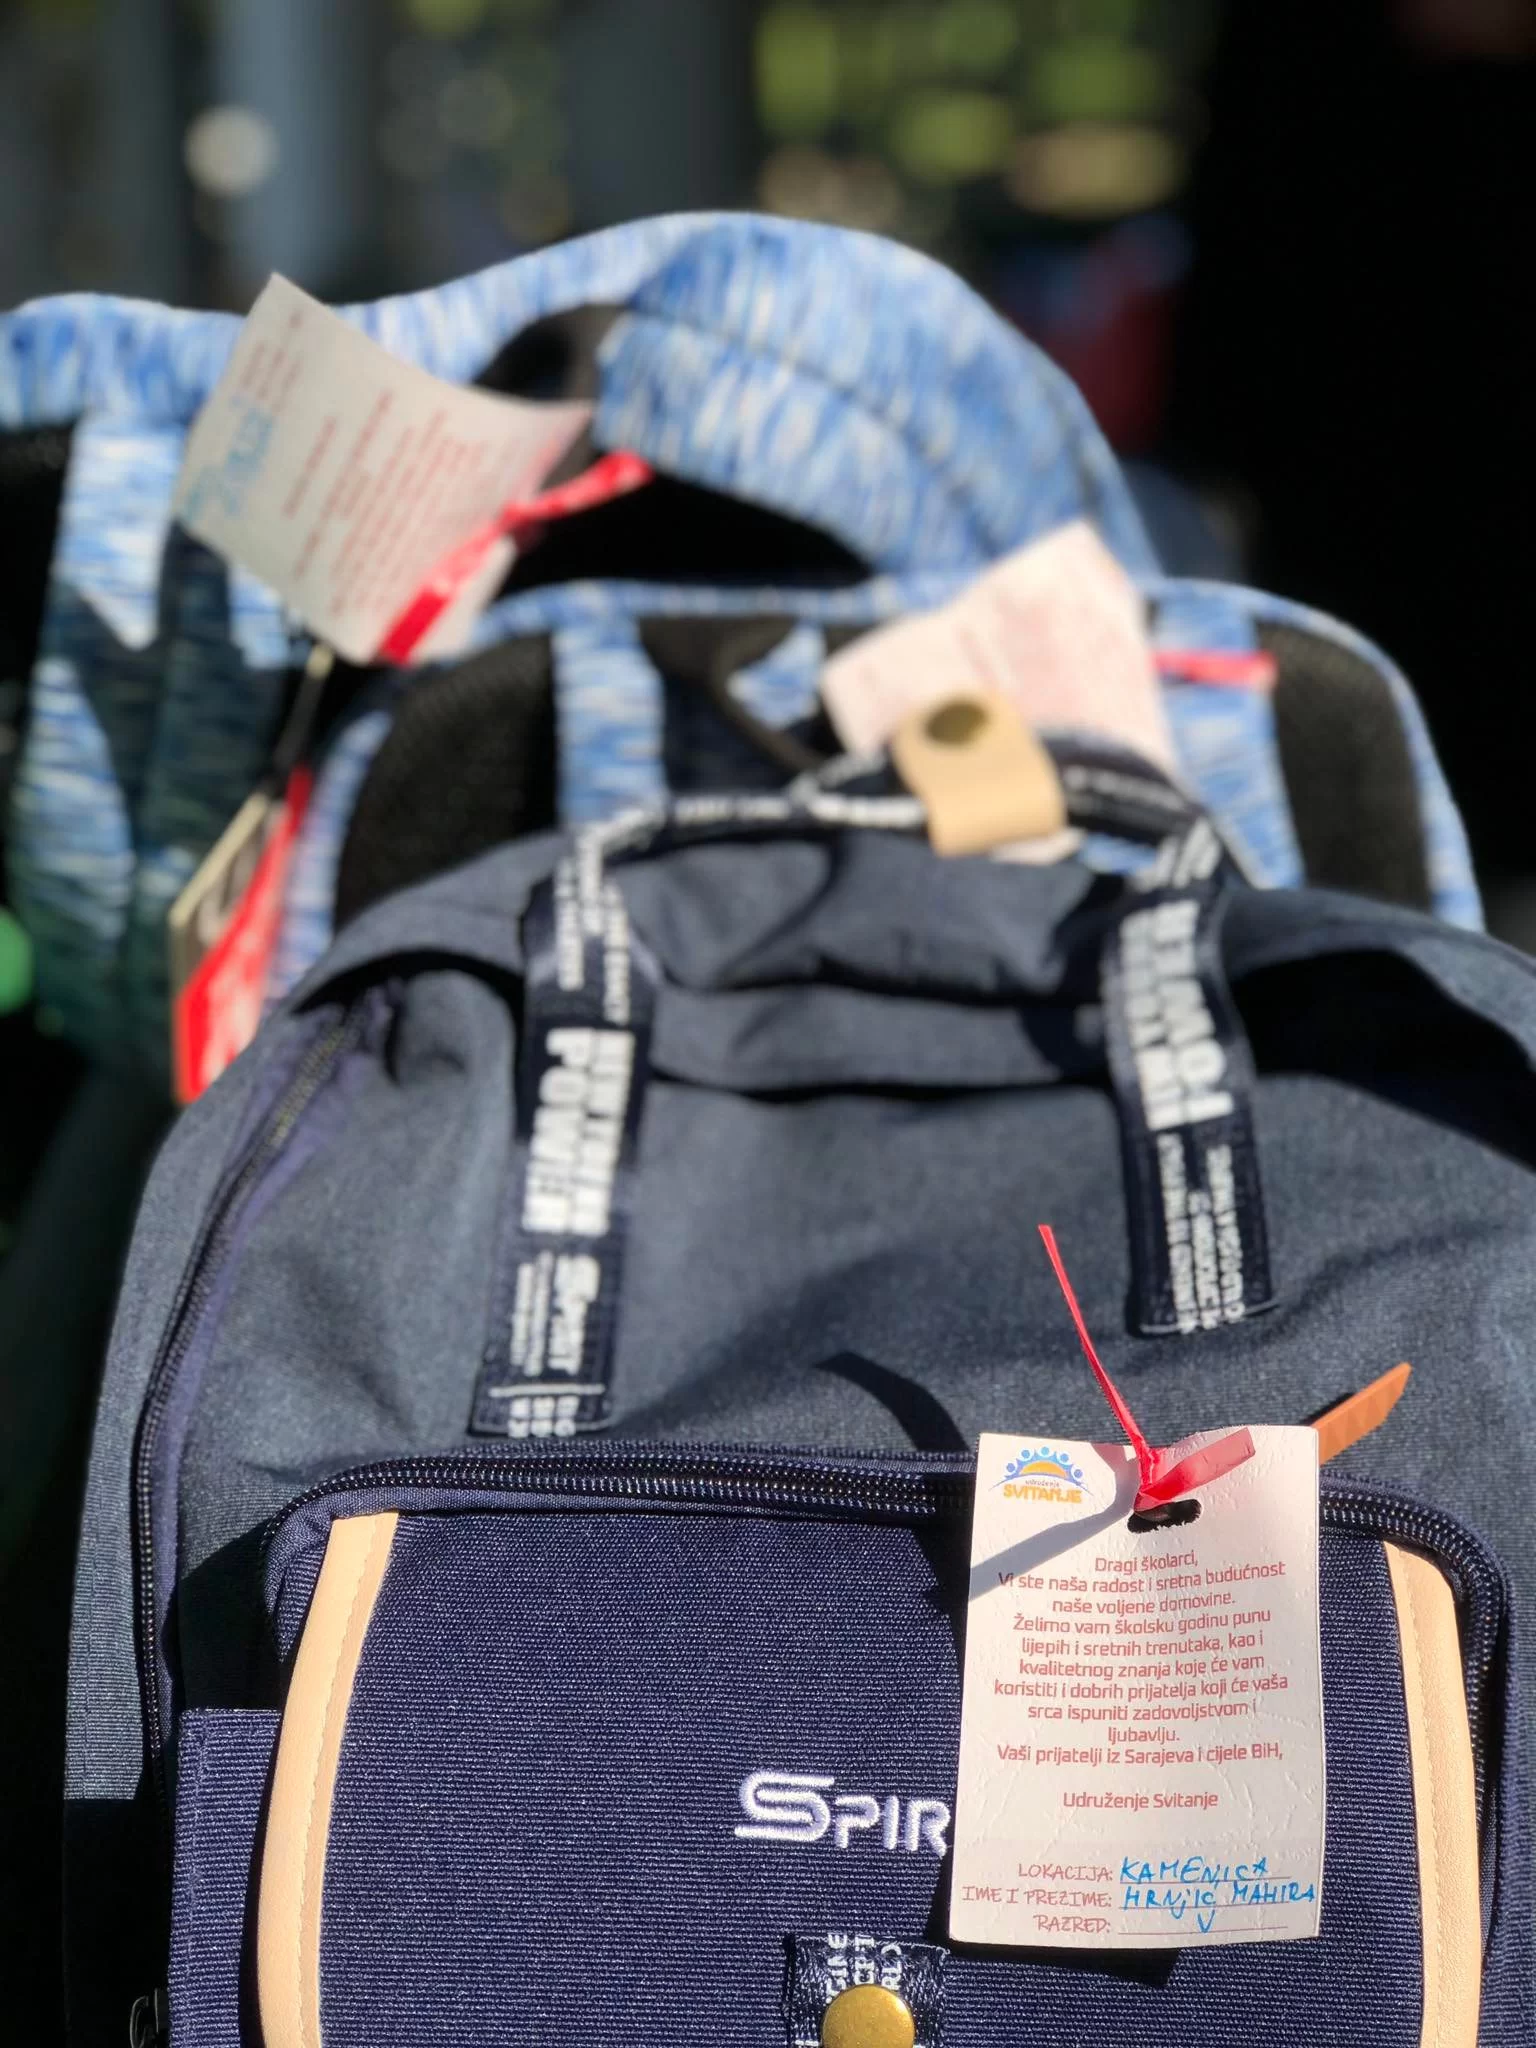 Udruženje "Svitanje" iz Sarajevo uručilo školske torbe i kompletan pribor učenicima povratnicima u Zvorniku (FOTO)